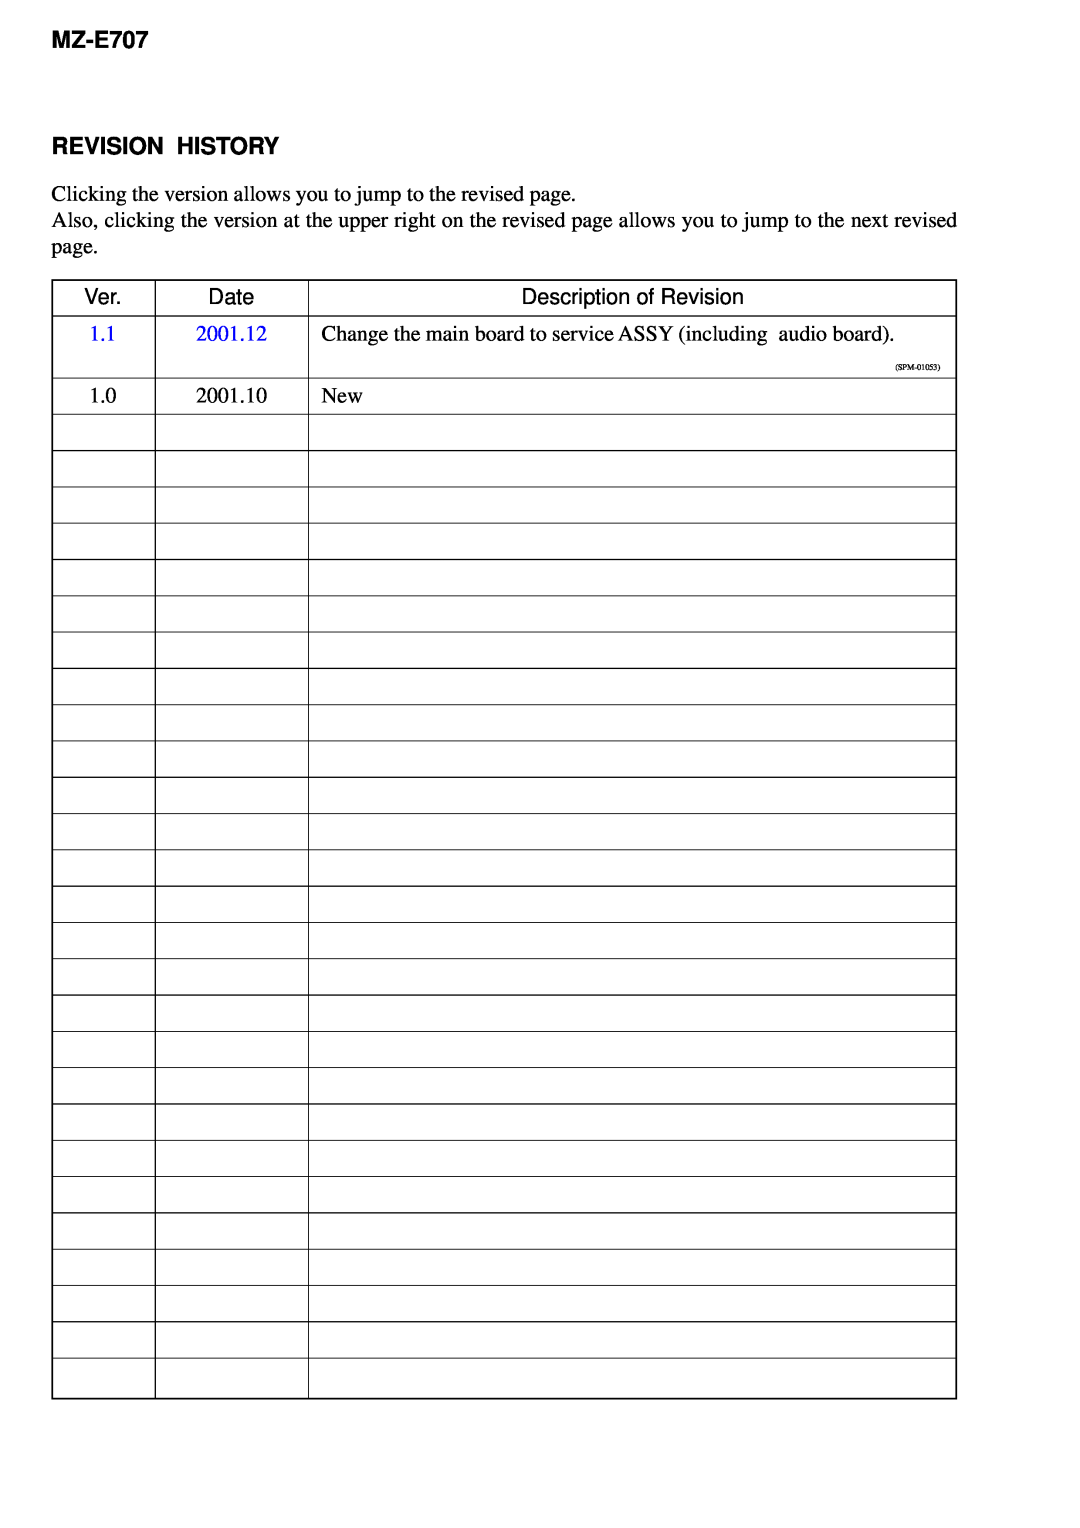 Sony service manual MZ-E707 REVISION HISTORY, Date, Description of Revision, 2001.12, 2001.10, SPM-01053 